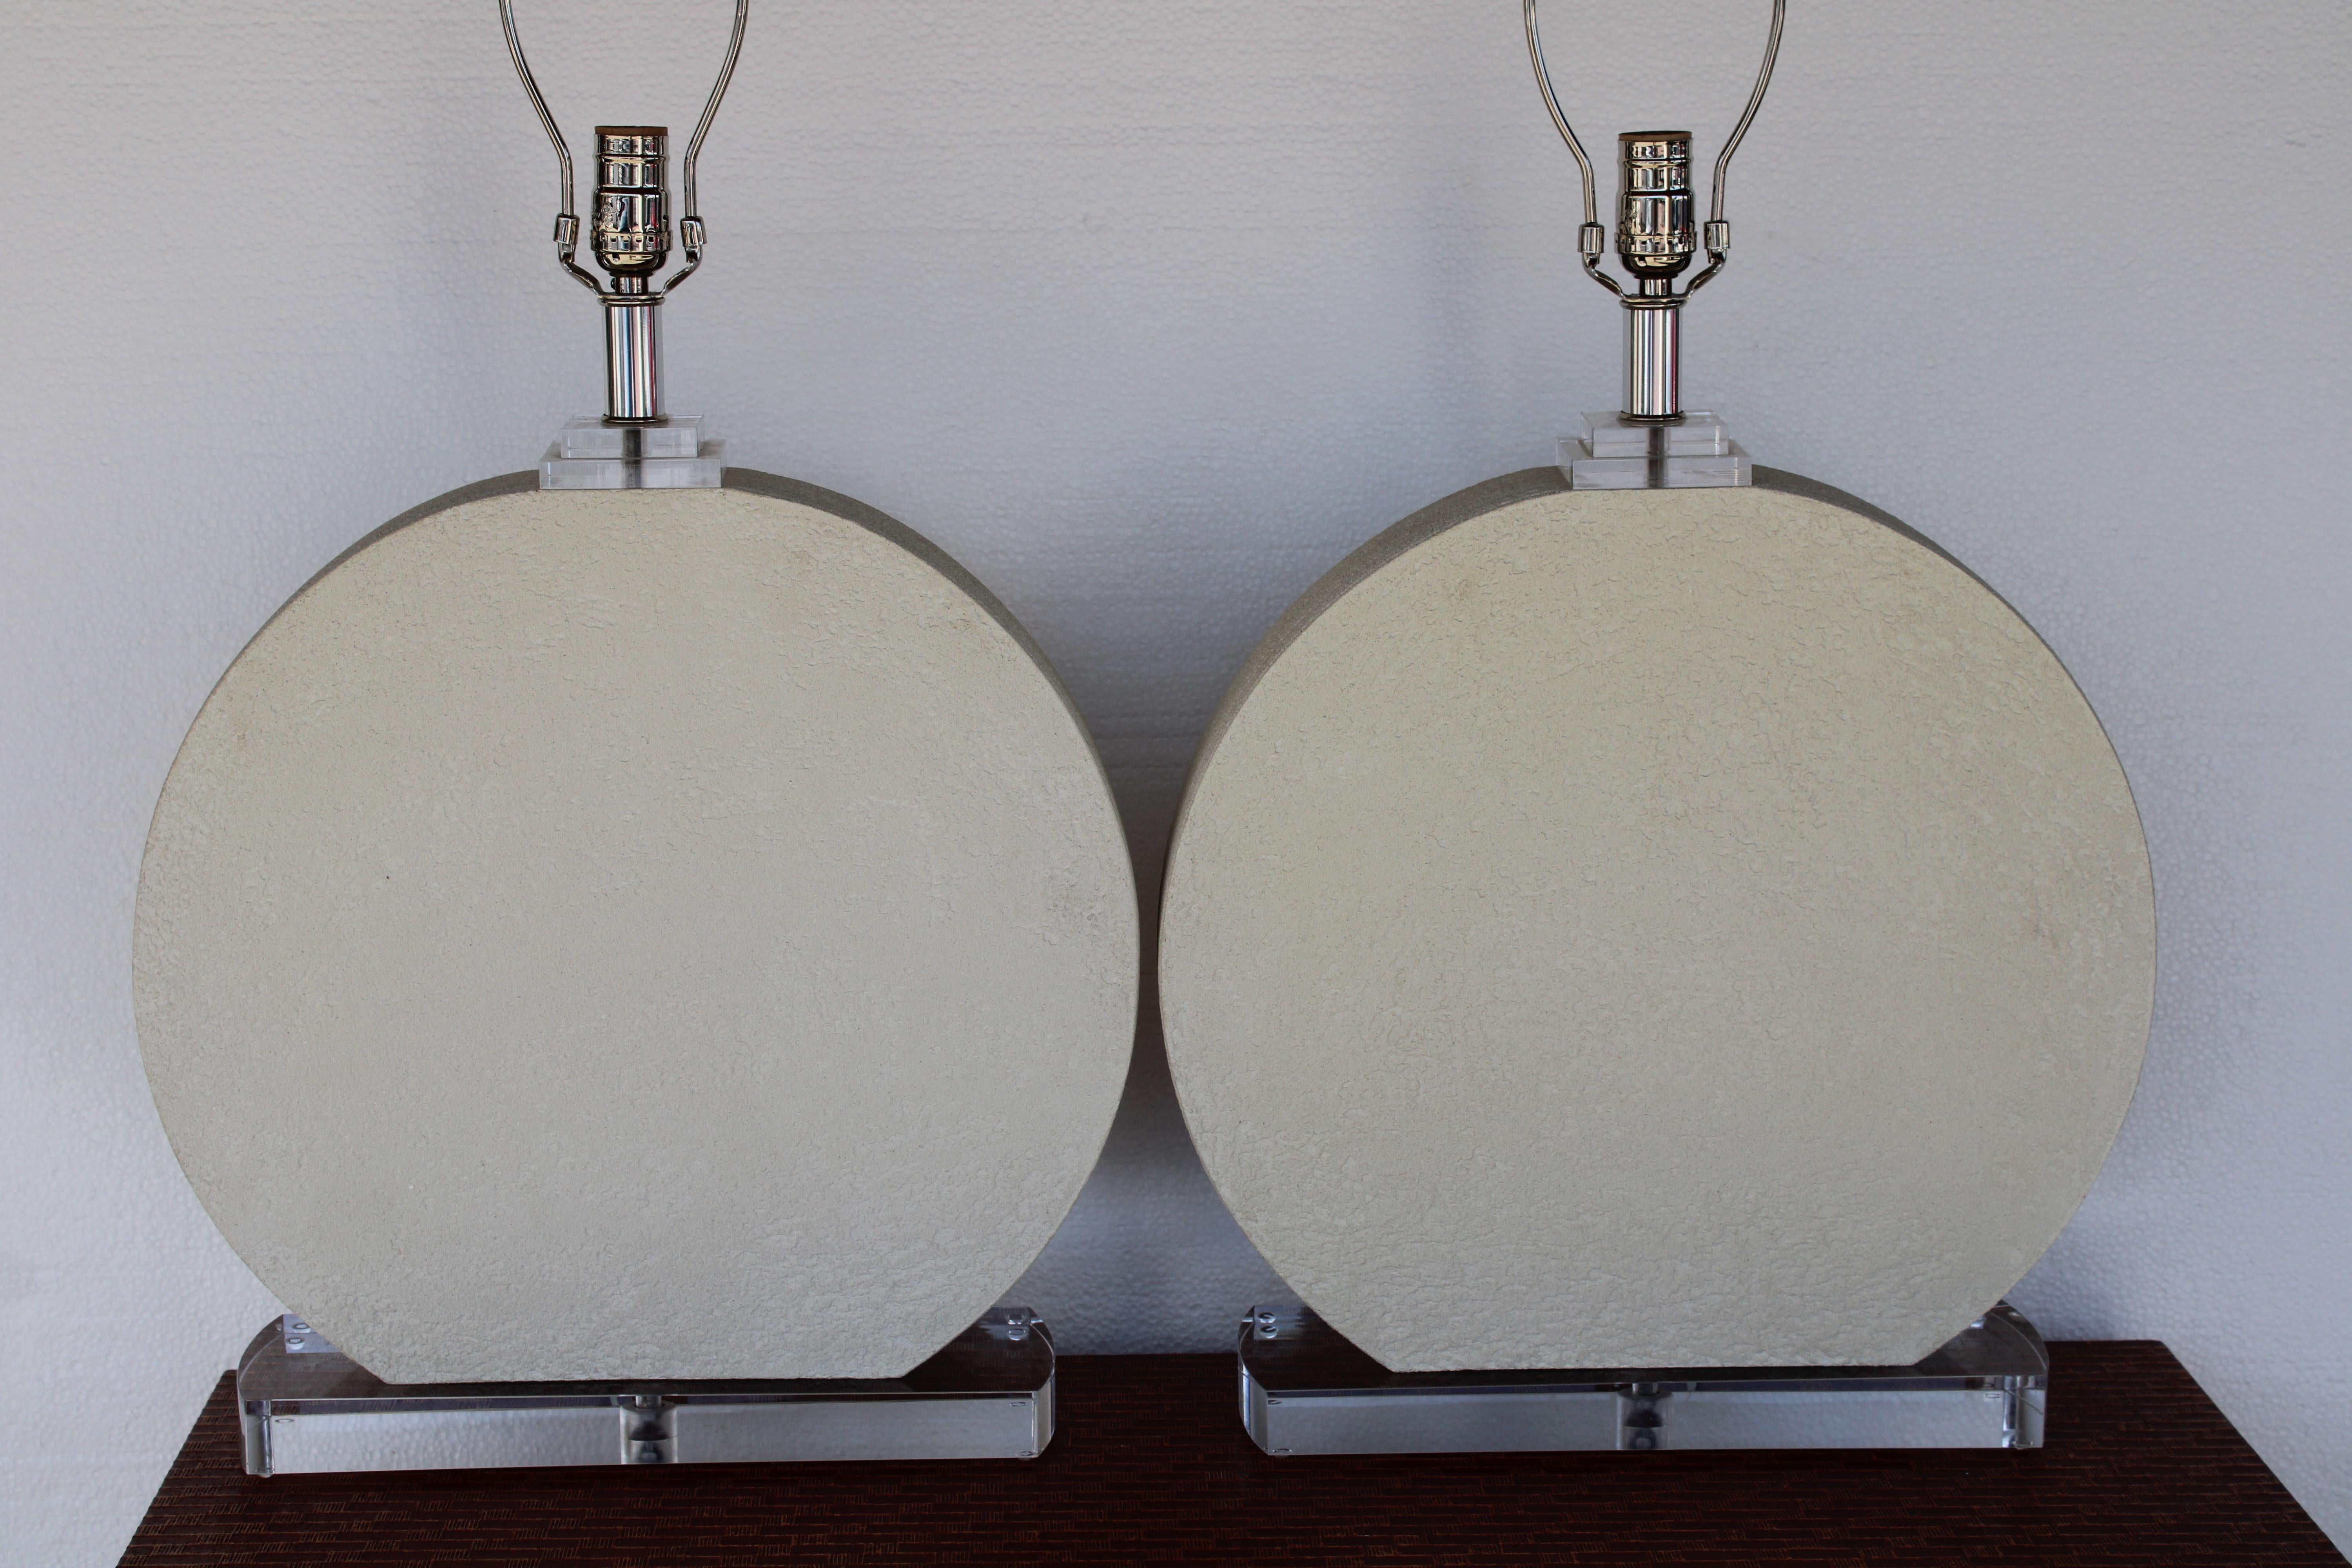 Pair of circular ceramic and lucite table lamps. Lamps measure 20.5